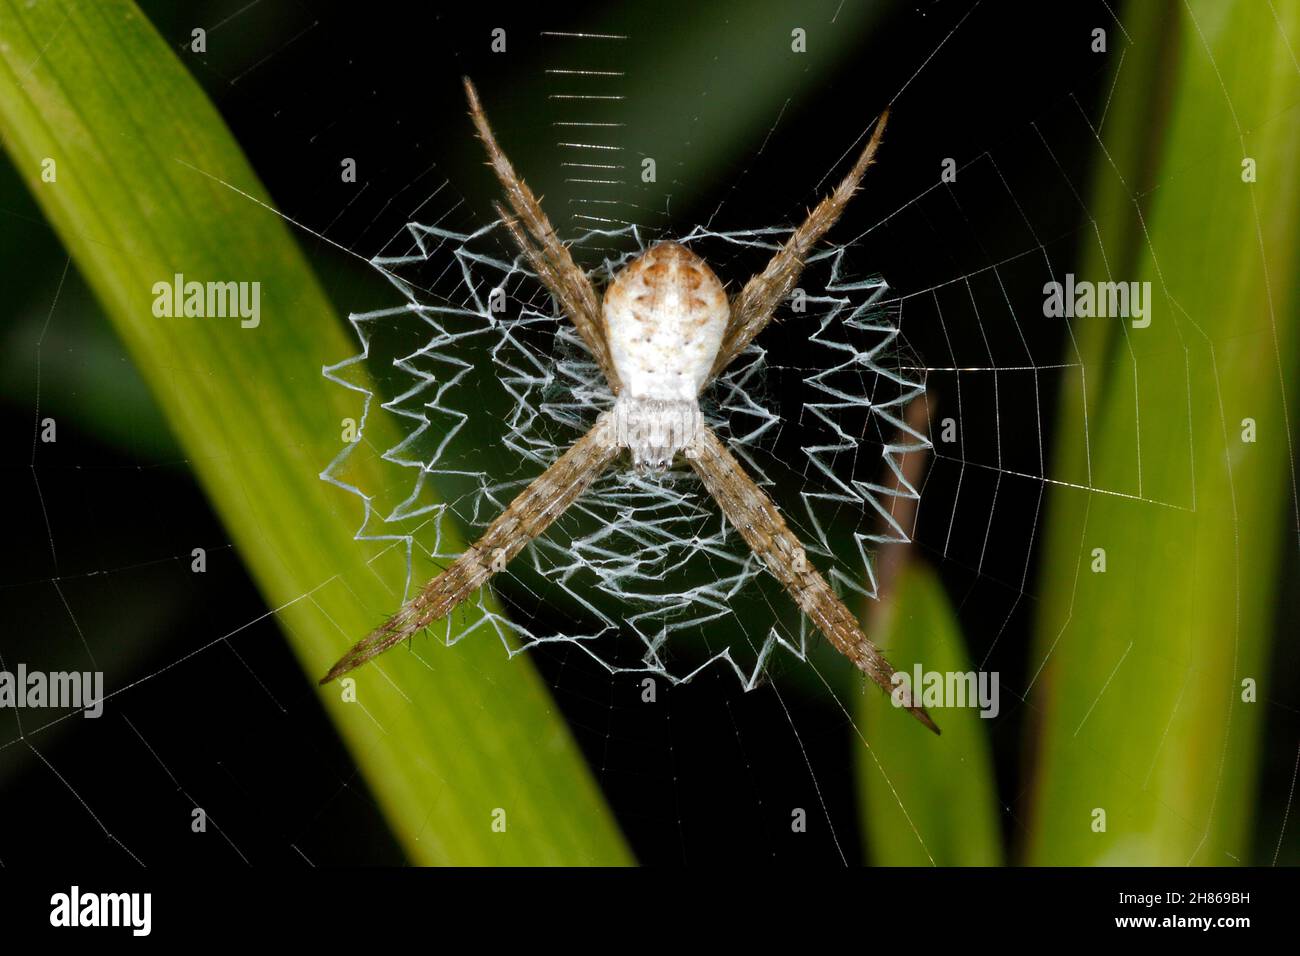 St Andrews Cross Spider, Argiope keyserlingi, ist eine Orb-Weberspinne aus Australien. Junge Hündin, die das Kreuzstabilimentum in ihrem Netz zeigt. Stockfoto